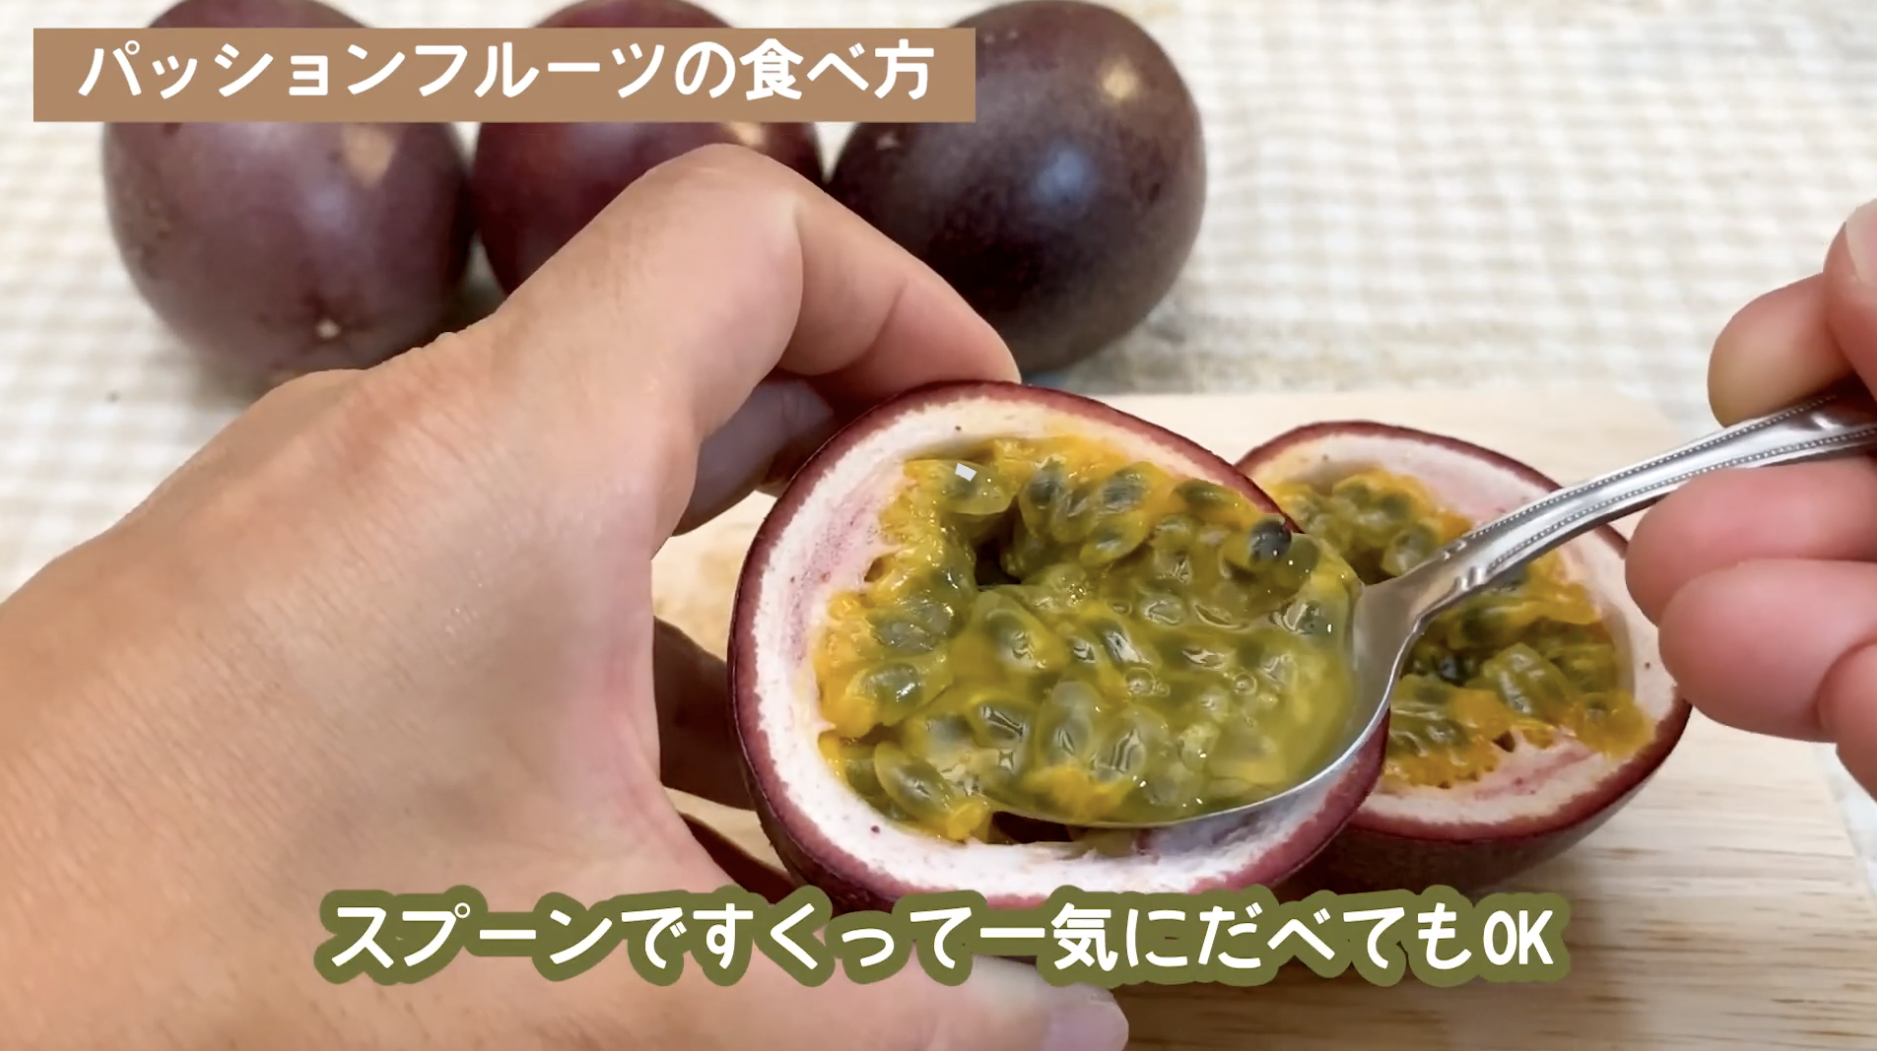 パッションフルーツとは 食べ方 切り方 熟し方 旬な時期 沖縄産直市場 通販時期などご紹介します Narukuro Blog